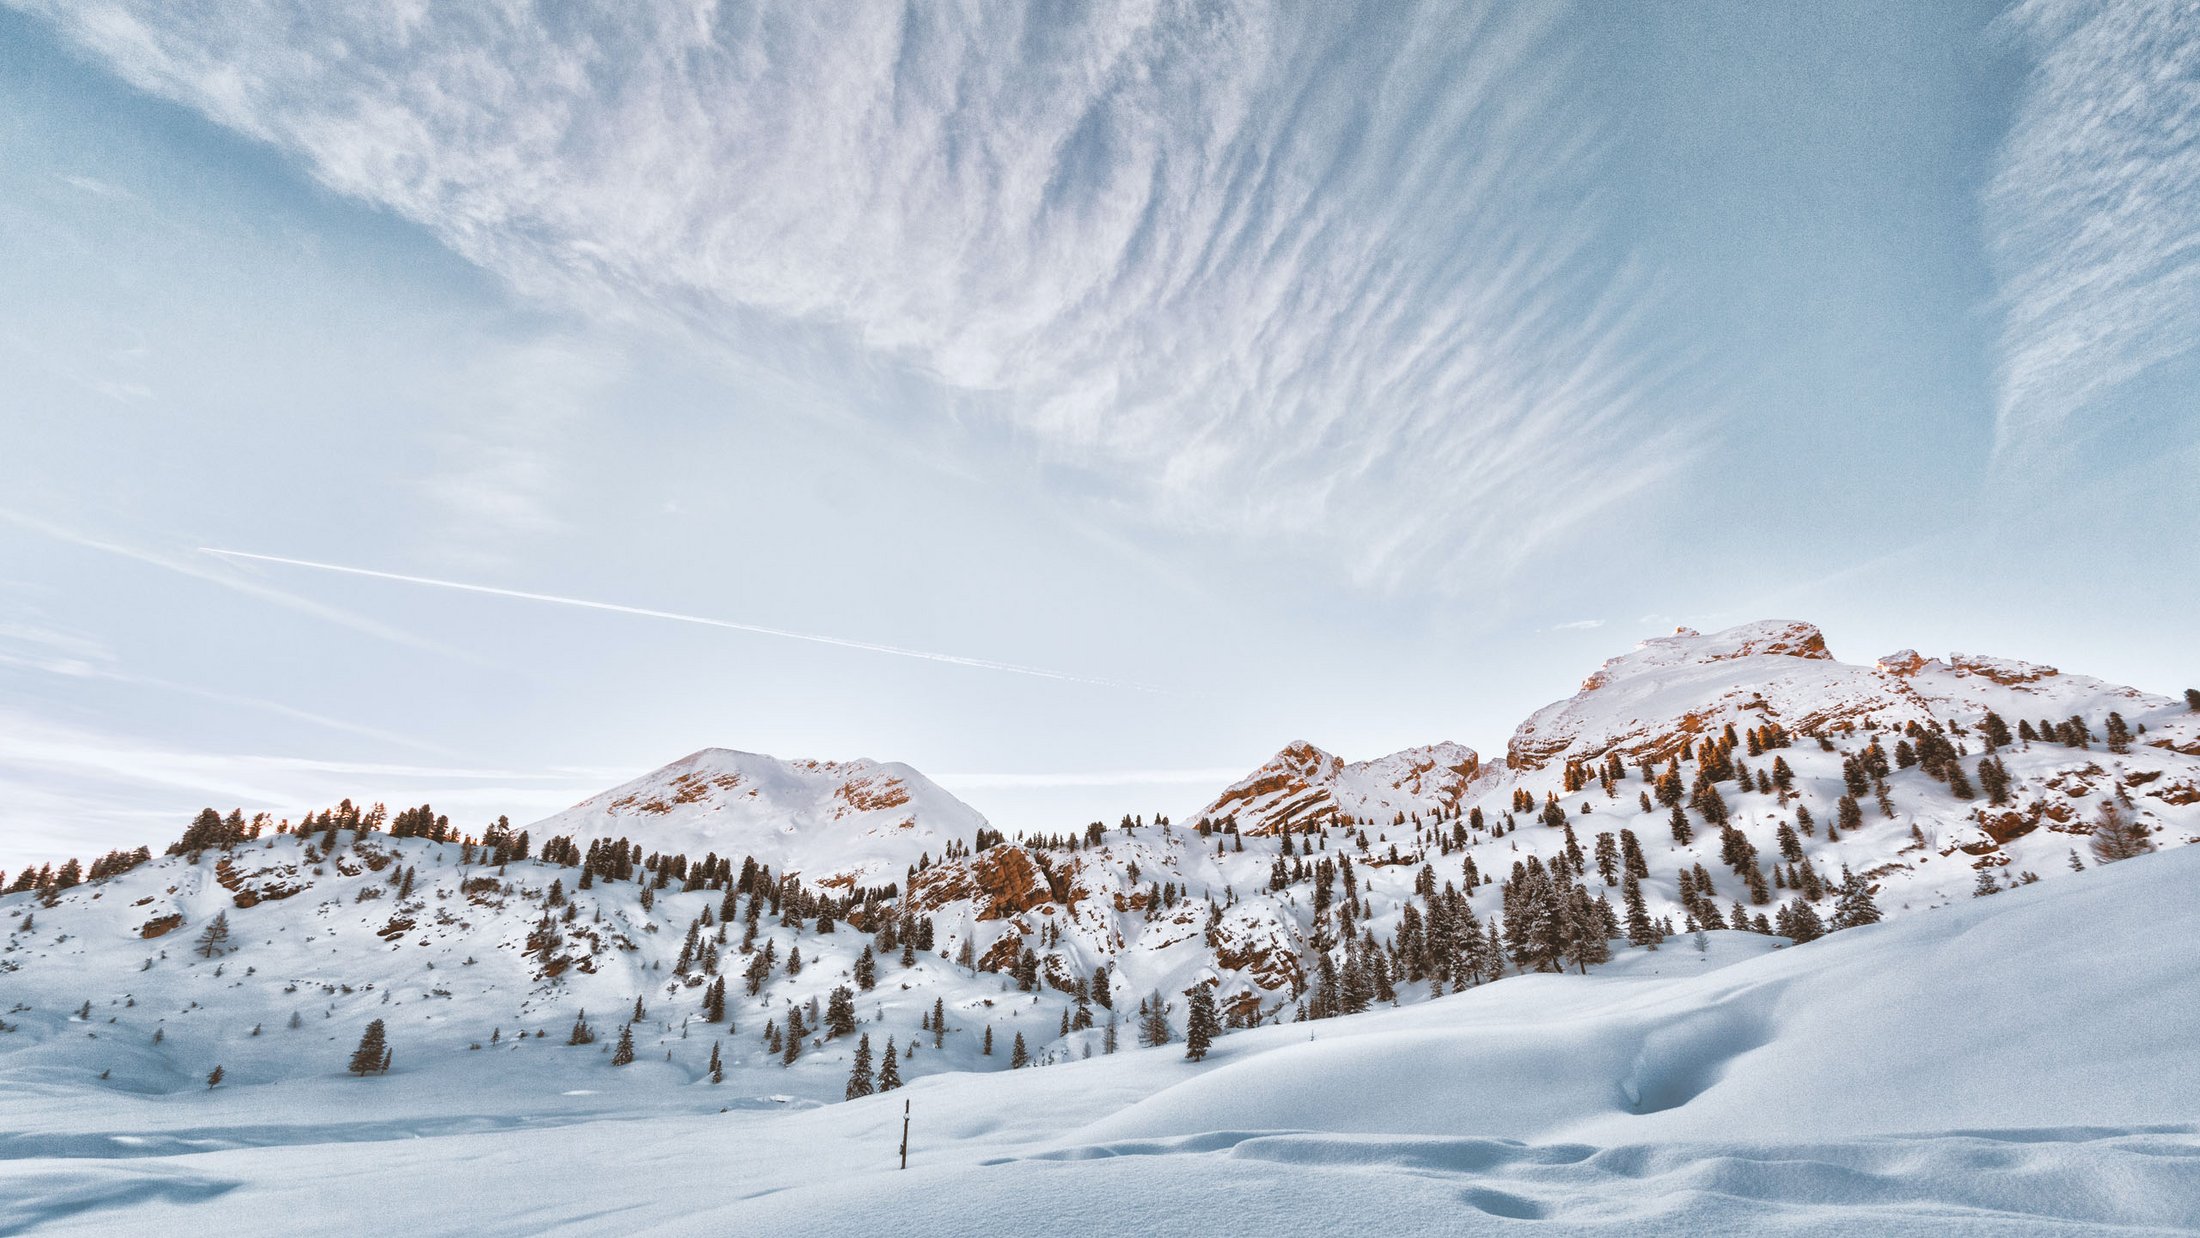 Hotel sulle piste da sci nelle Dolomiti